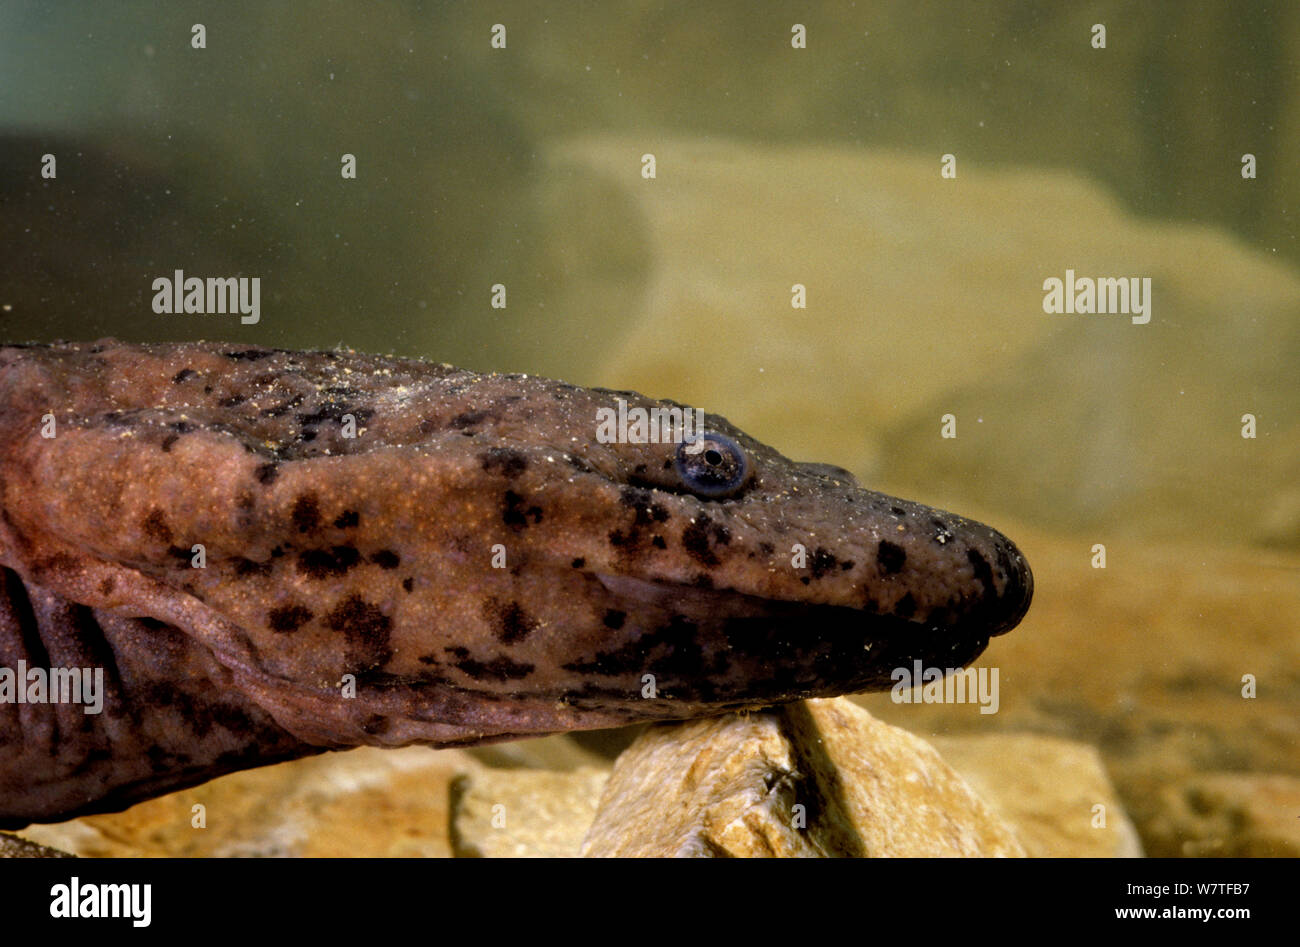 La Salamandre géante de Chine (Andrias davidianus) Chine, captive. Critique d'extinction. Banque D'Images